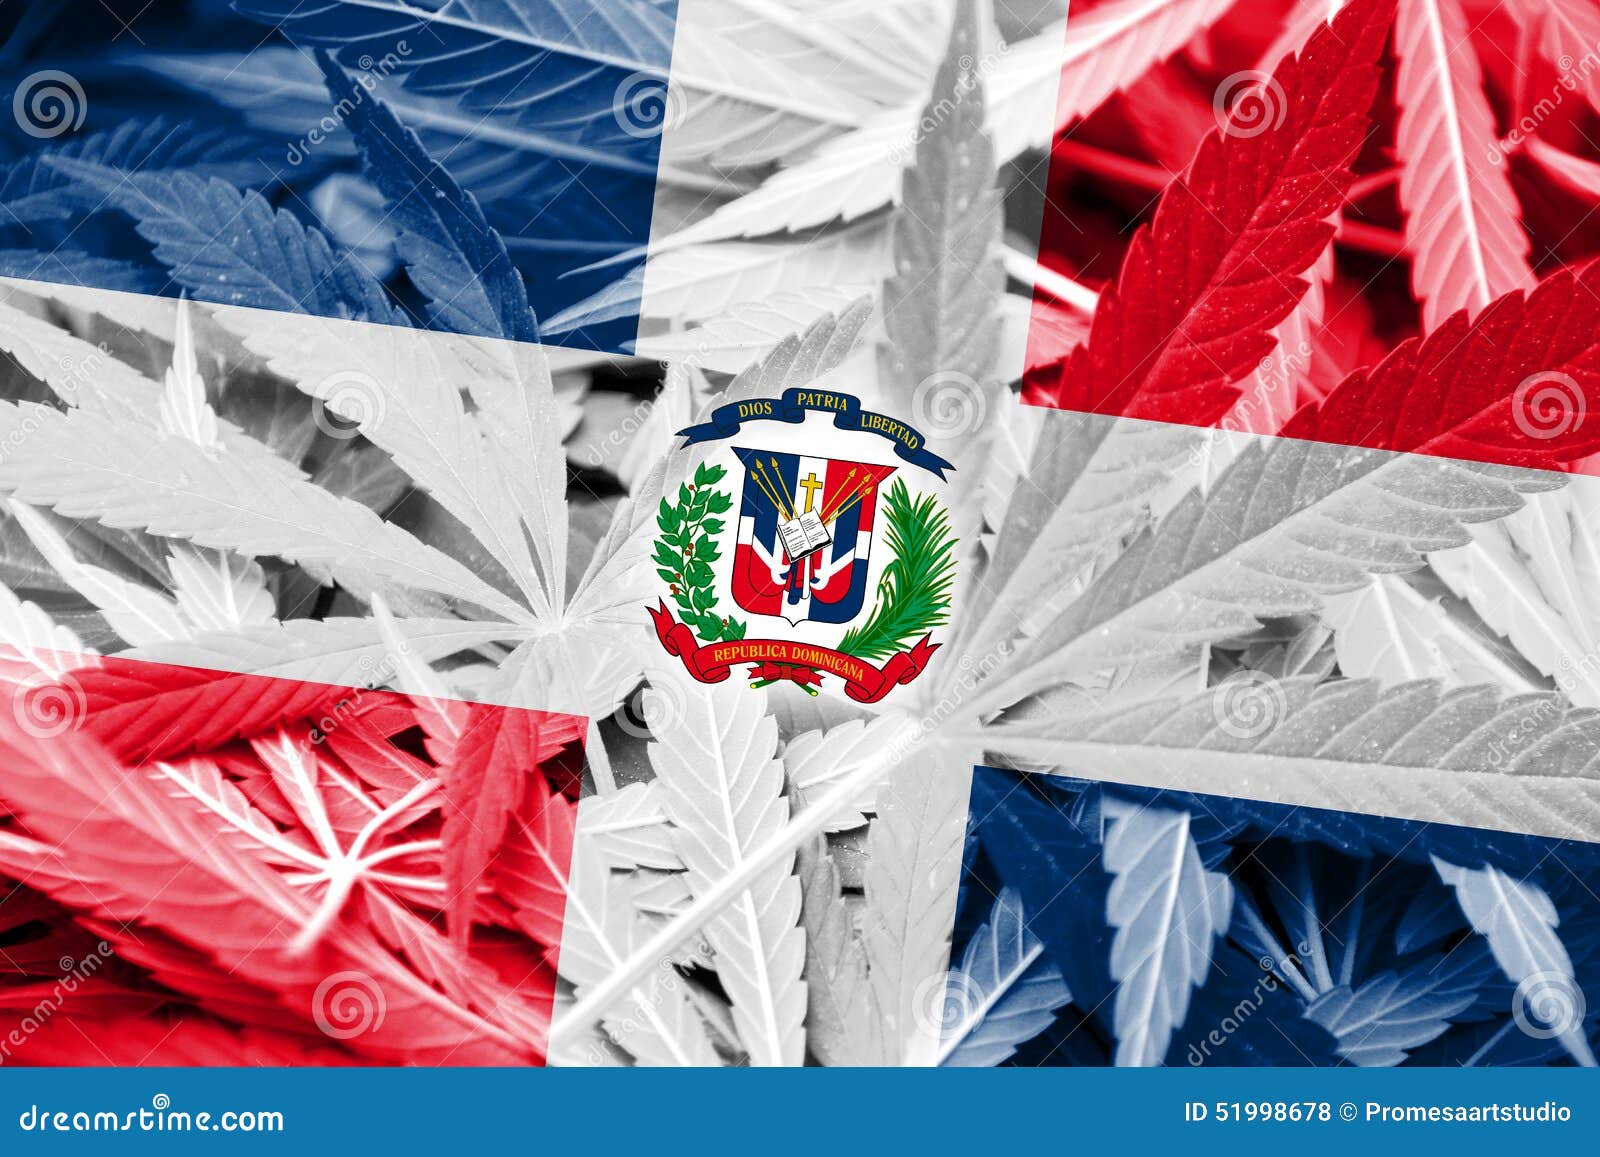 Марихуана в доминиканской республике марихуана в доминиканской республике